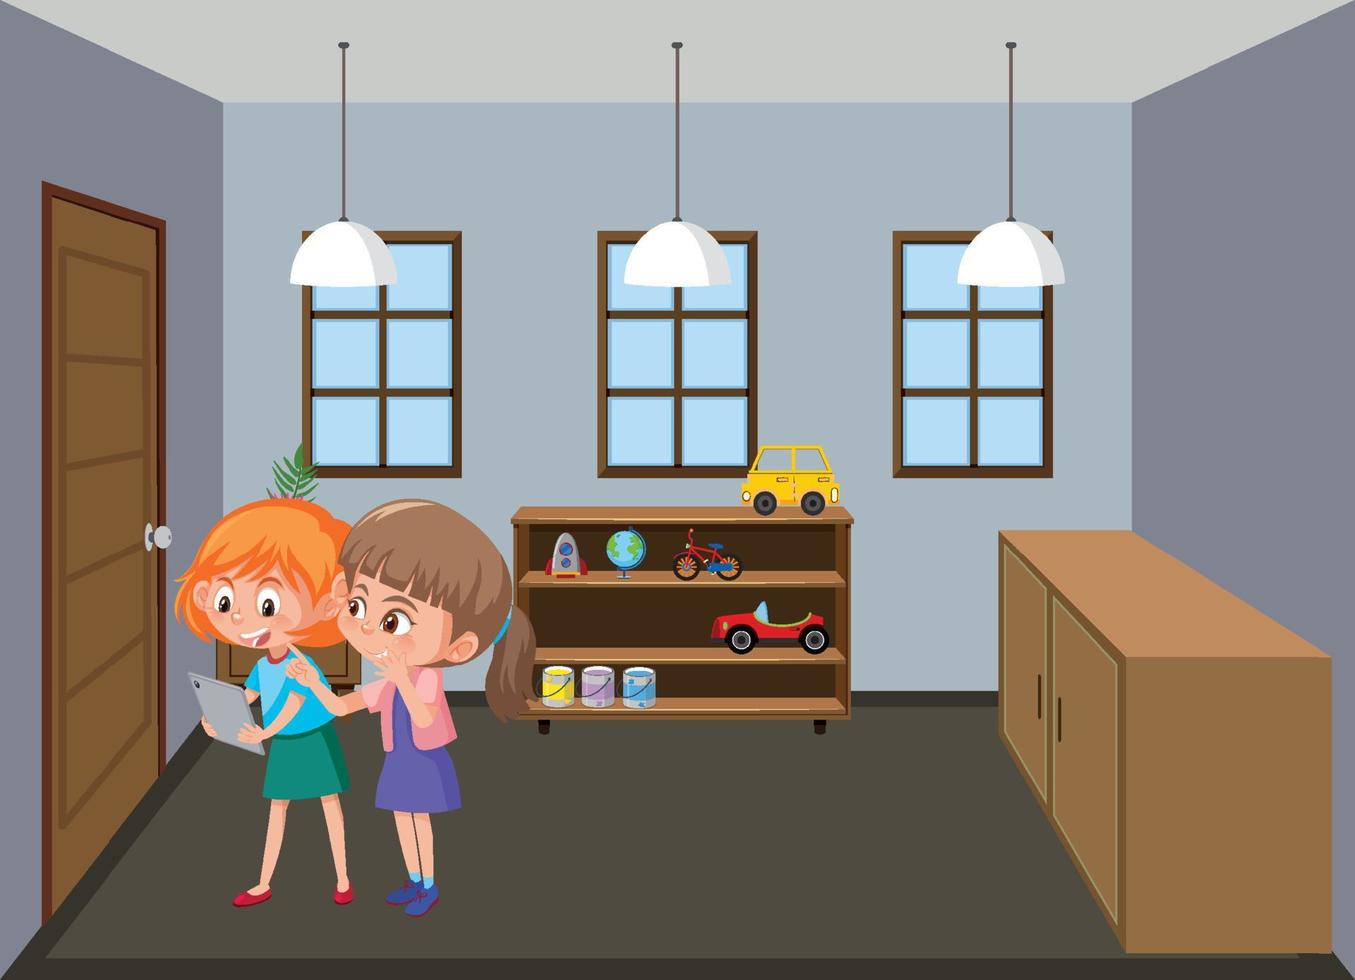 scena del soggiorno con i membri della famiglia in stile cartone animato vettore